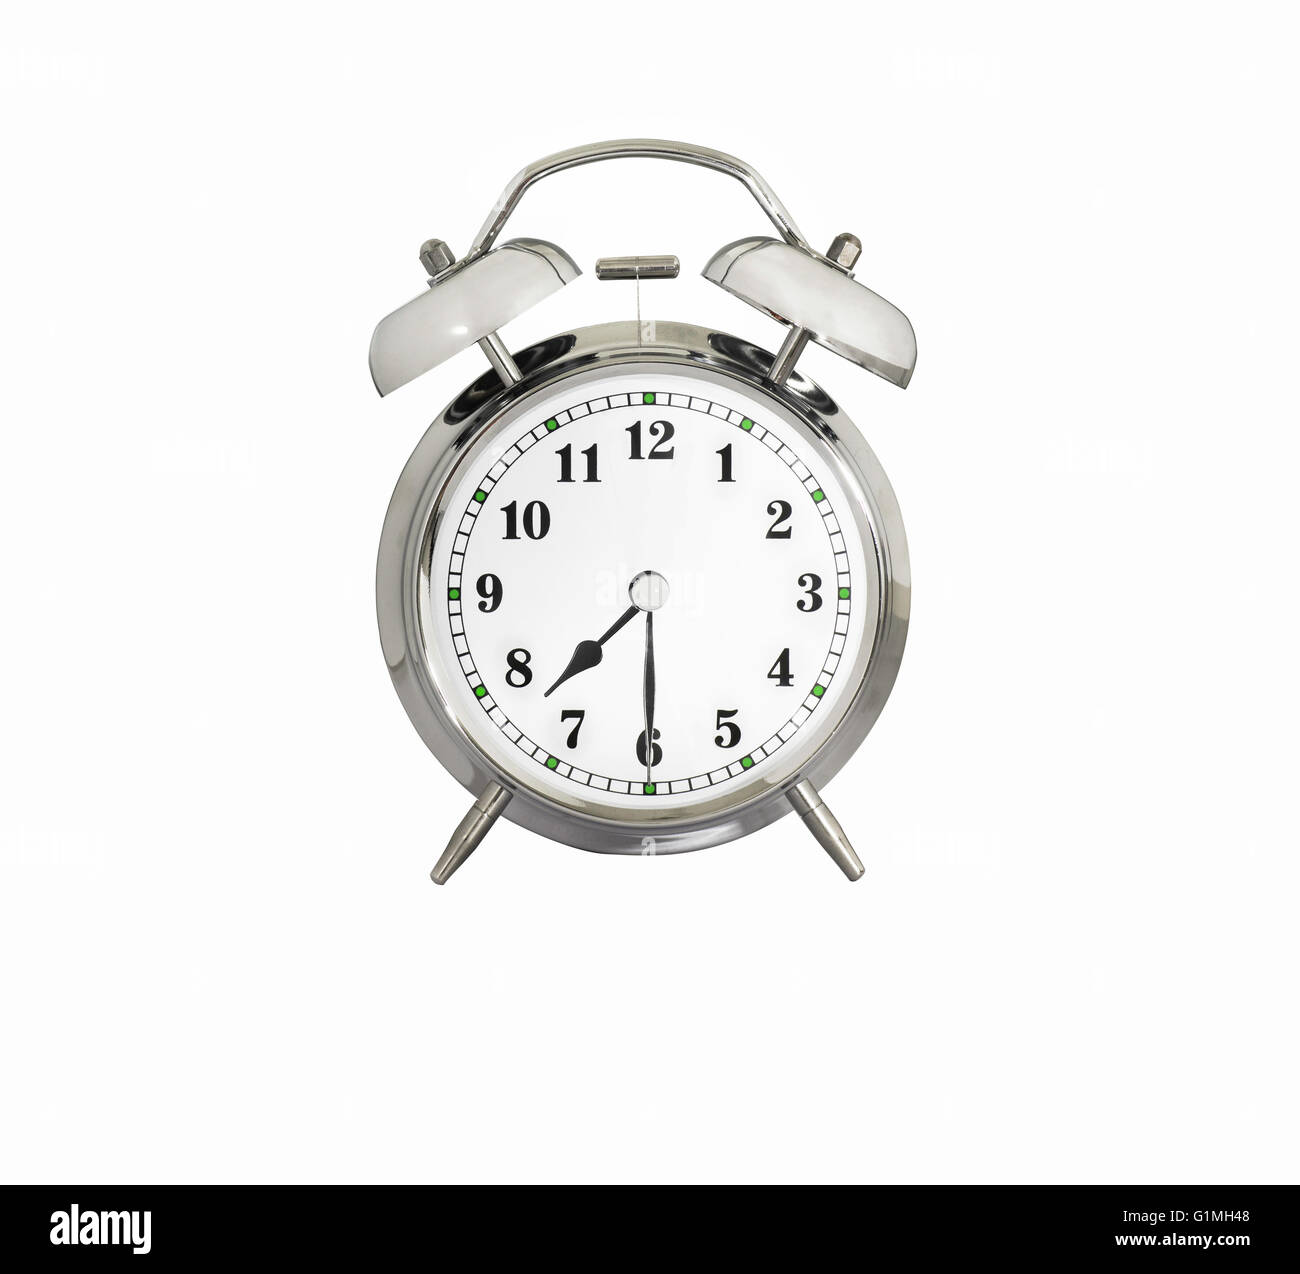 Clock 7 30 Immagini senza sfondo e Foto Stock ritagliate - Alamy